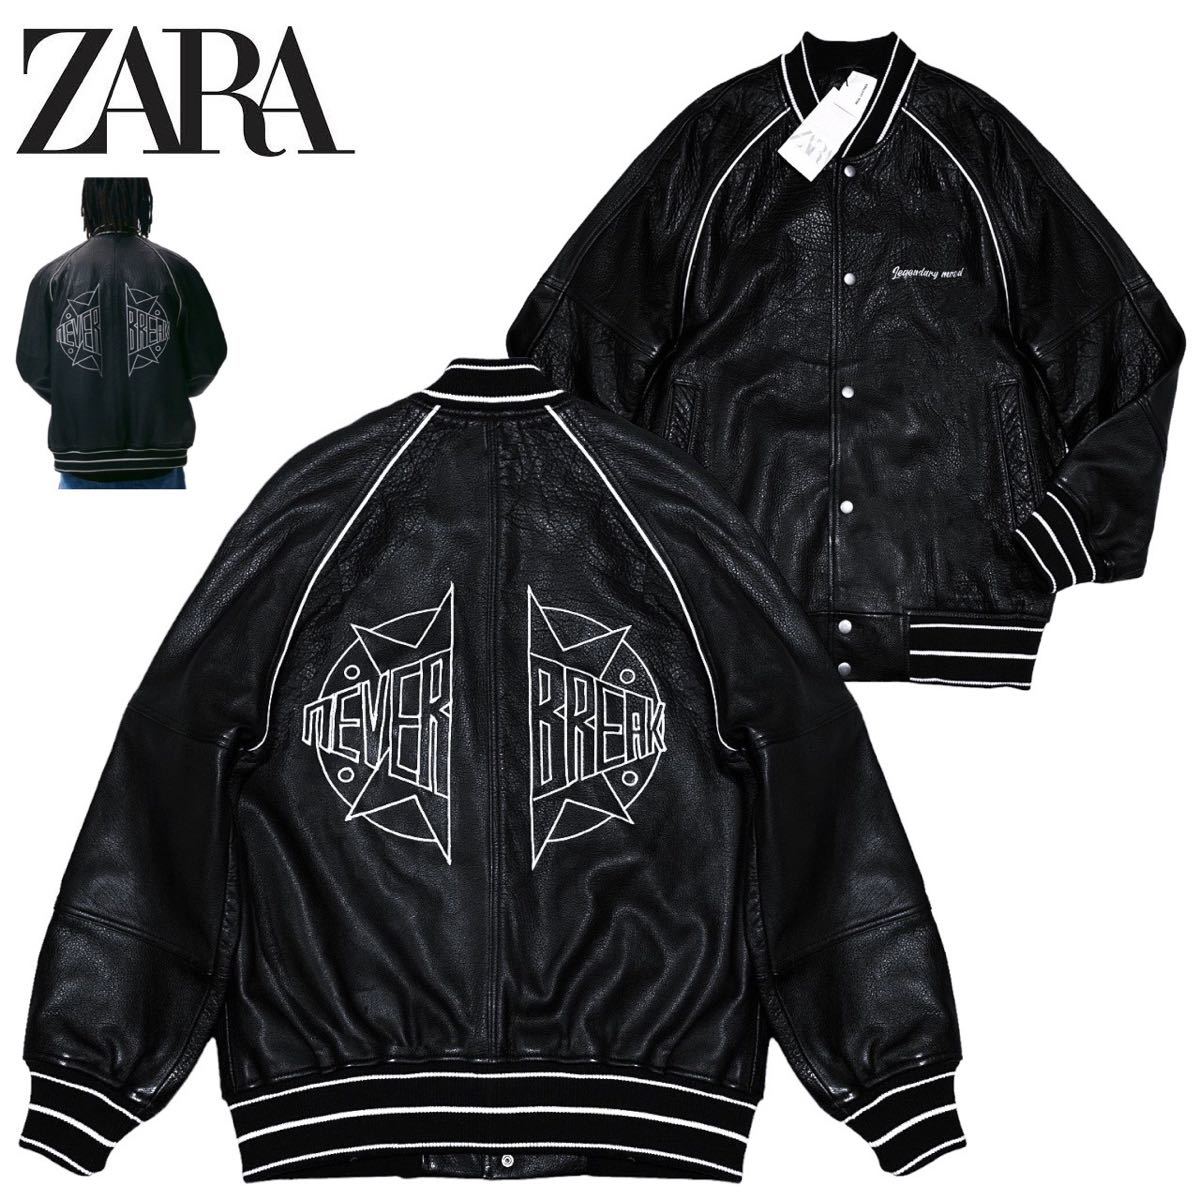 新品 21AW 定価2.5万 ZARA ザラ メンズ ロゴ刺繍 極上水牛革 オールレザー ボンバー バーシティジャケット 大きめS 黒 スタジャン ブルゾン